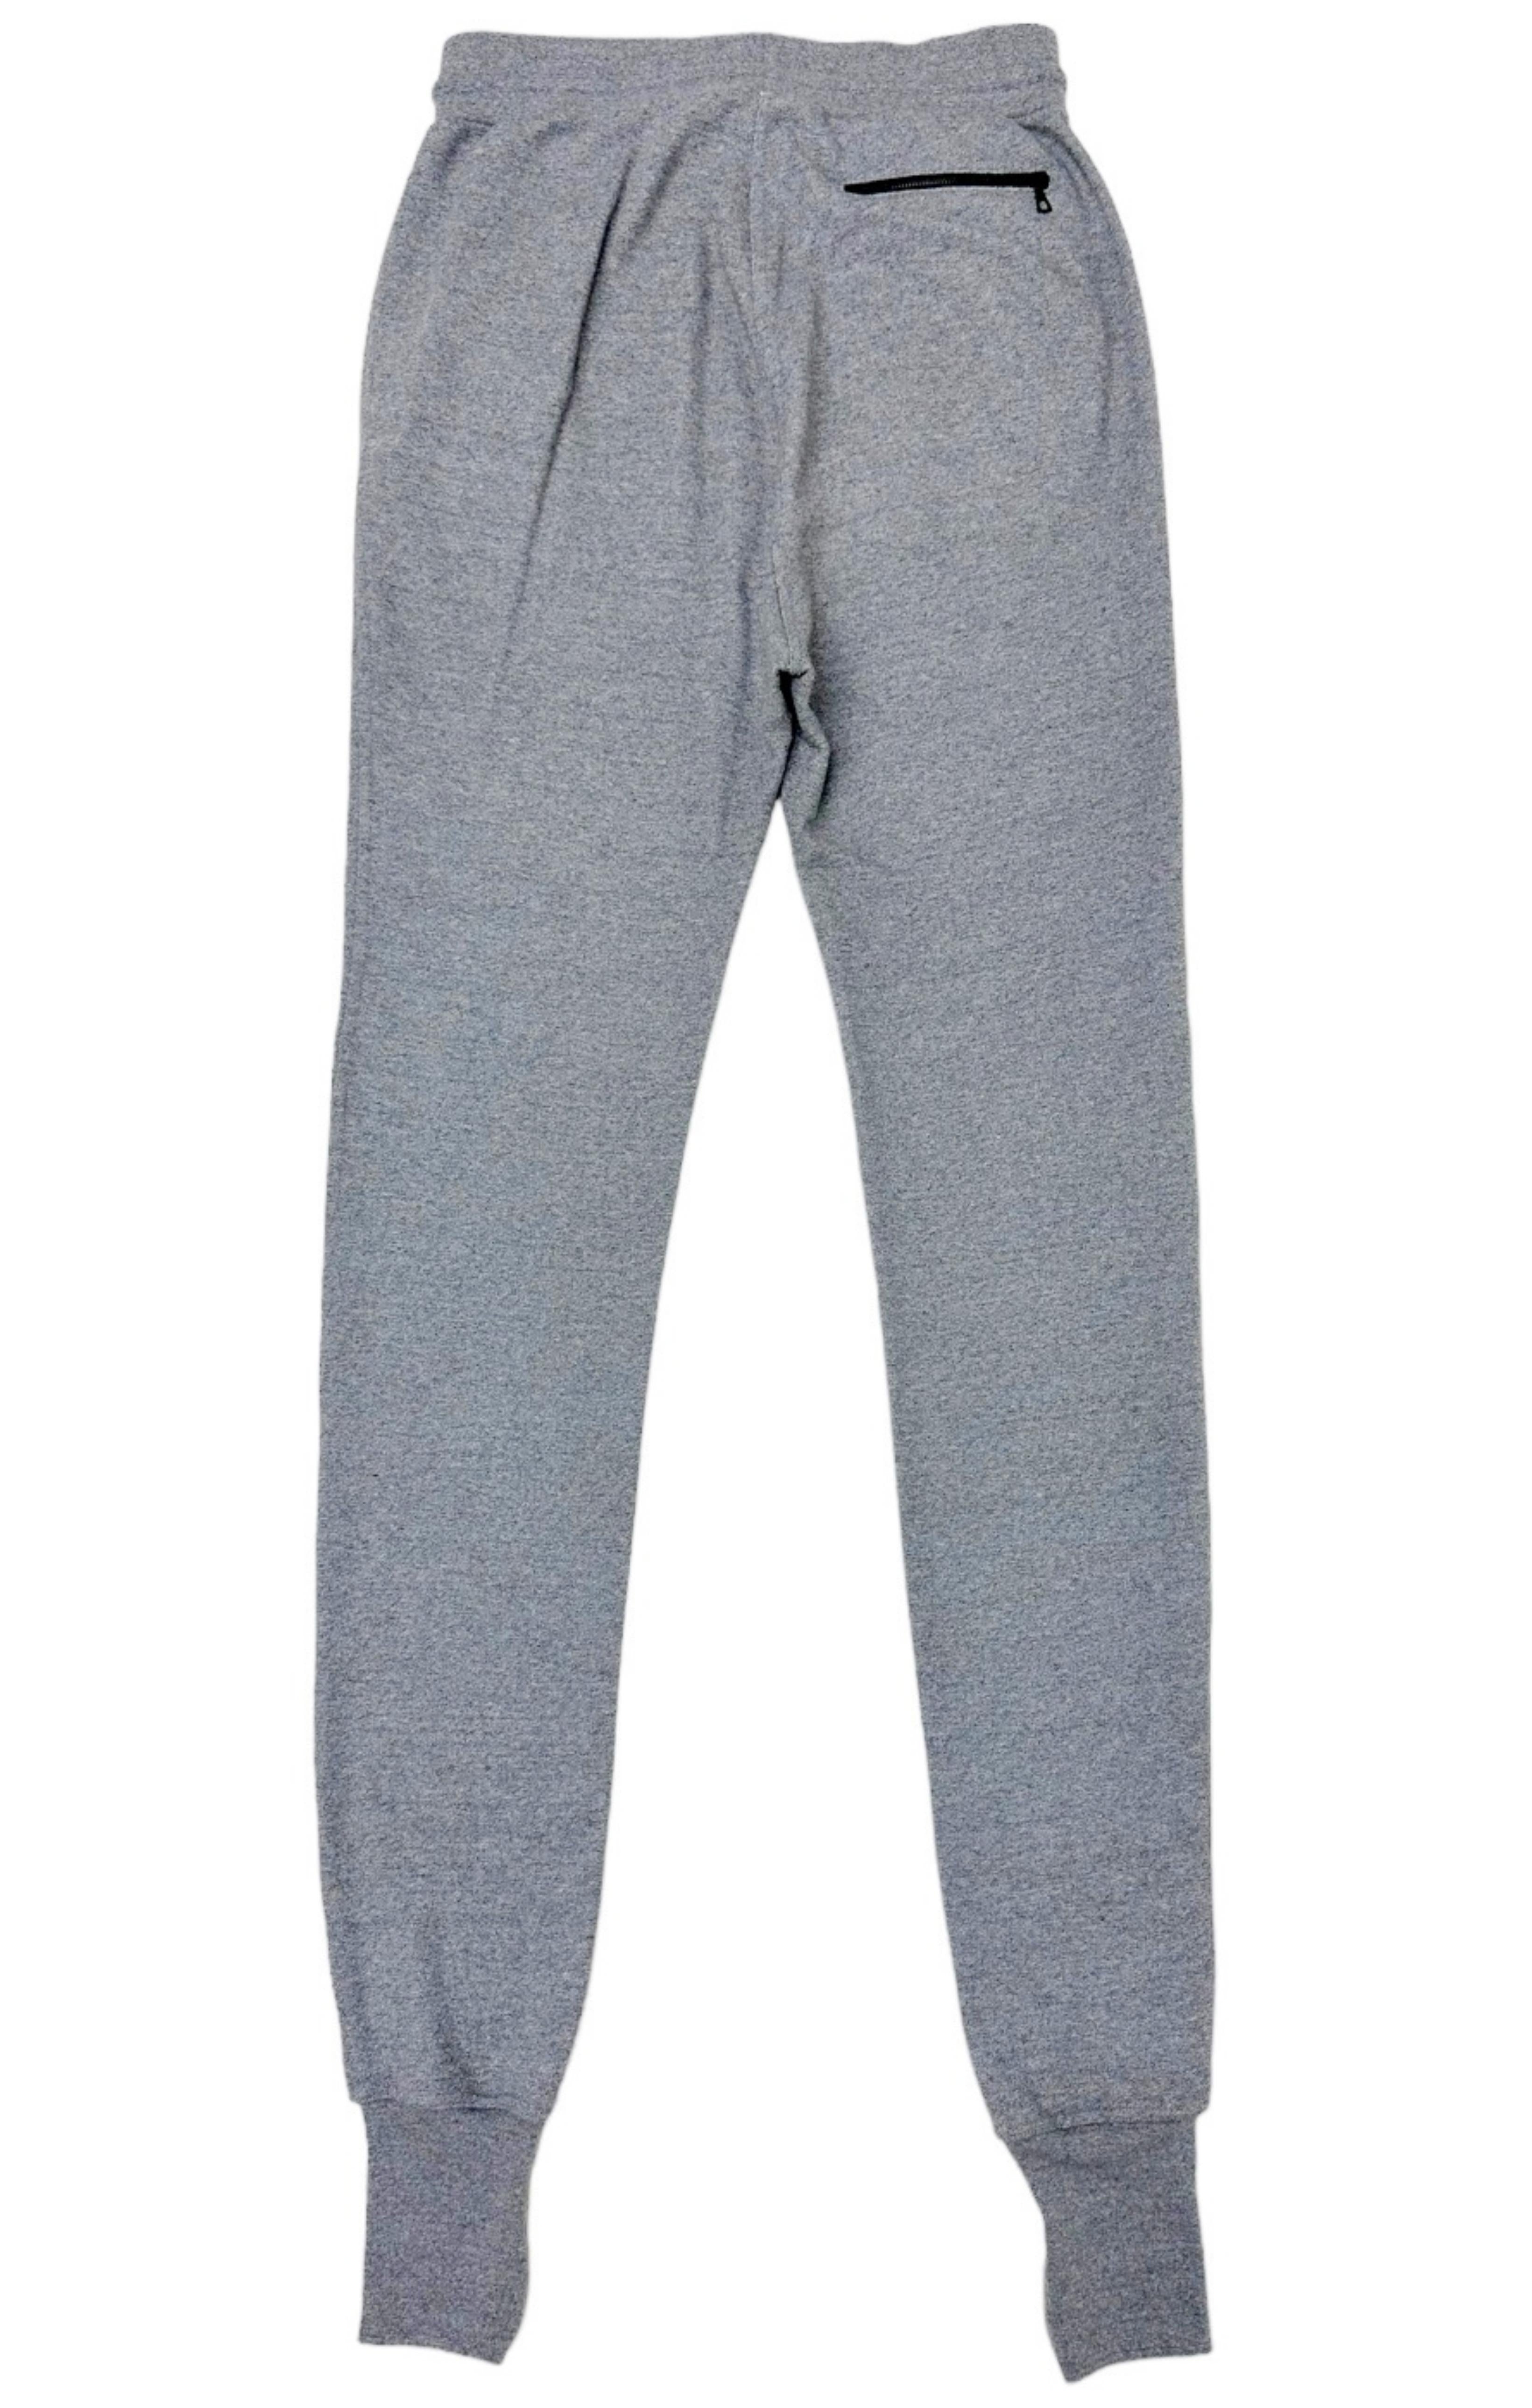 JOHN ELLIOTT (RARE) Sweatpants Size: 5 / Fits like 2XL-TALL